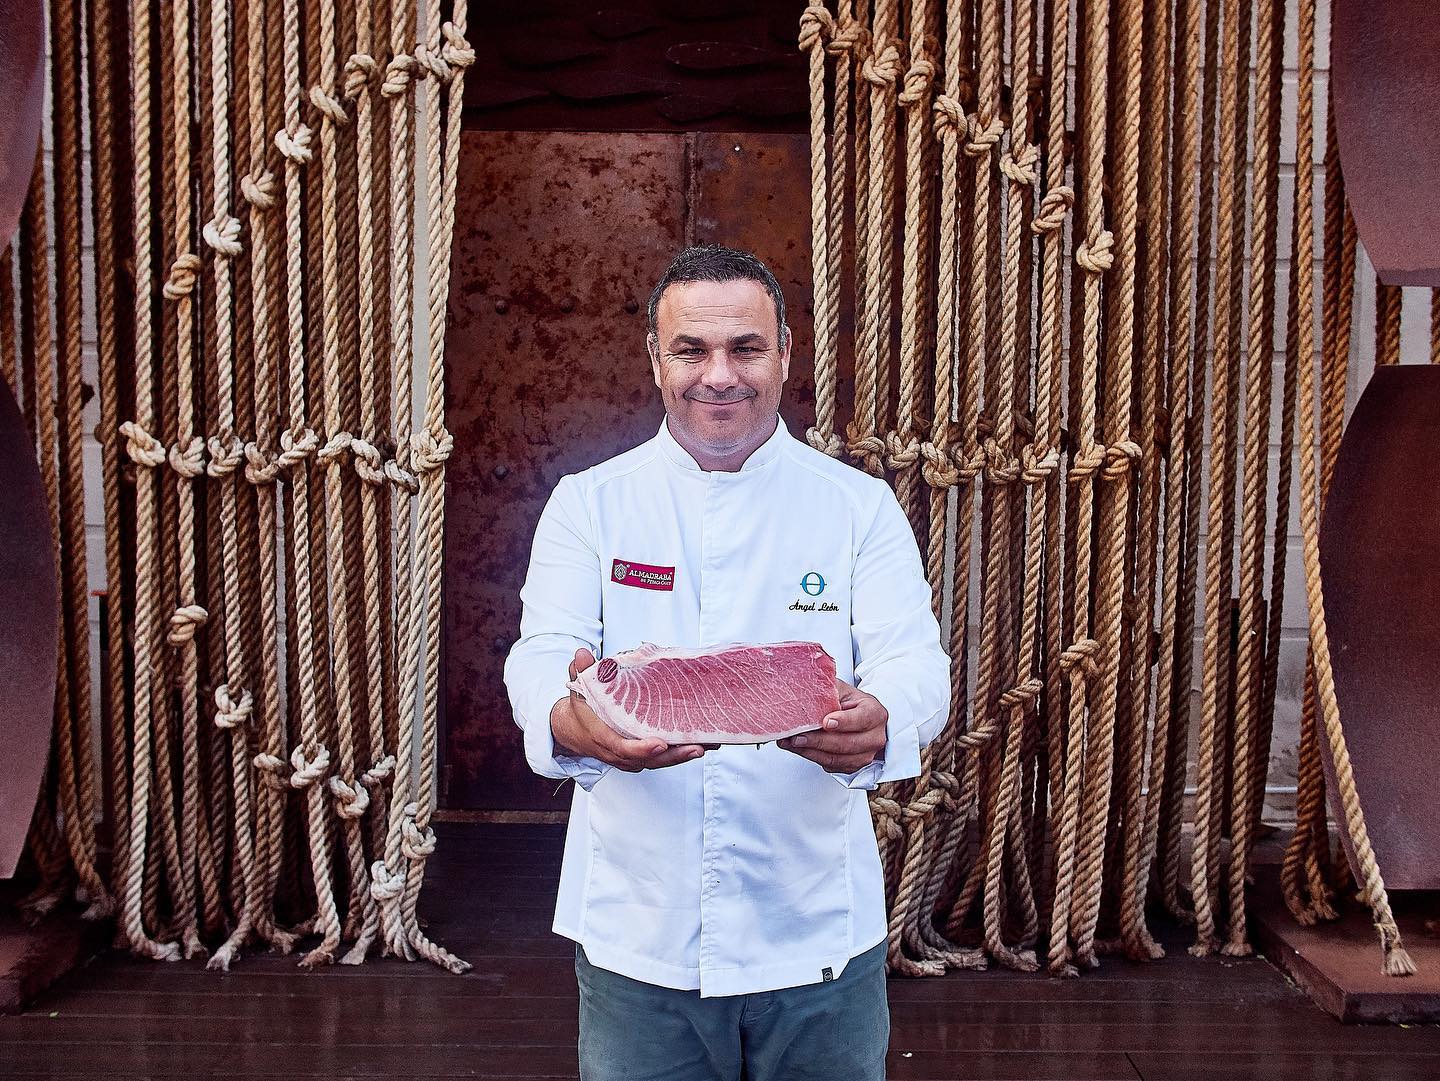 El chef Ángel León en una imagen de su archivo en el restaurante Aponiente. FACEBOOK